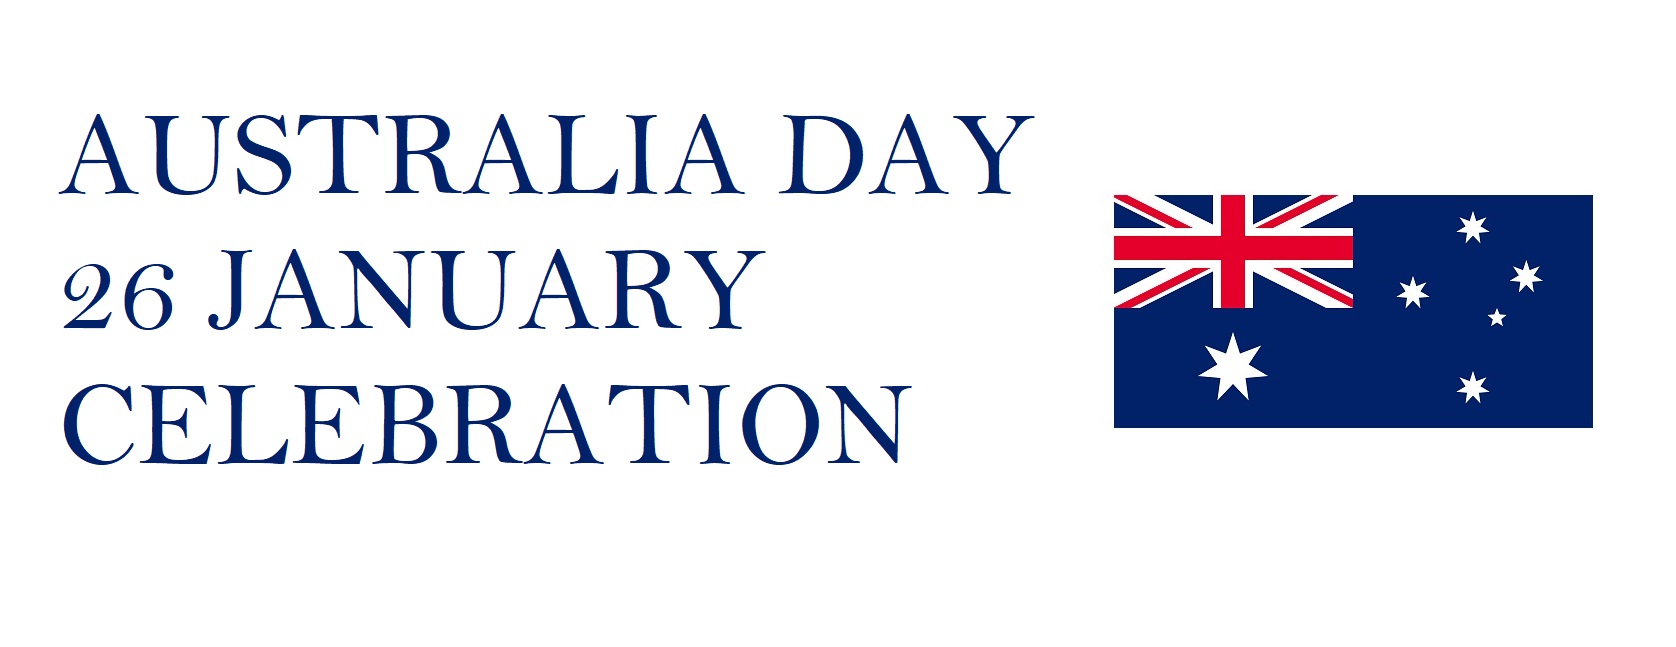 26 January Australia Day Public Holiday